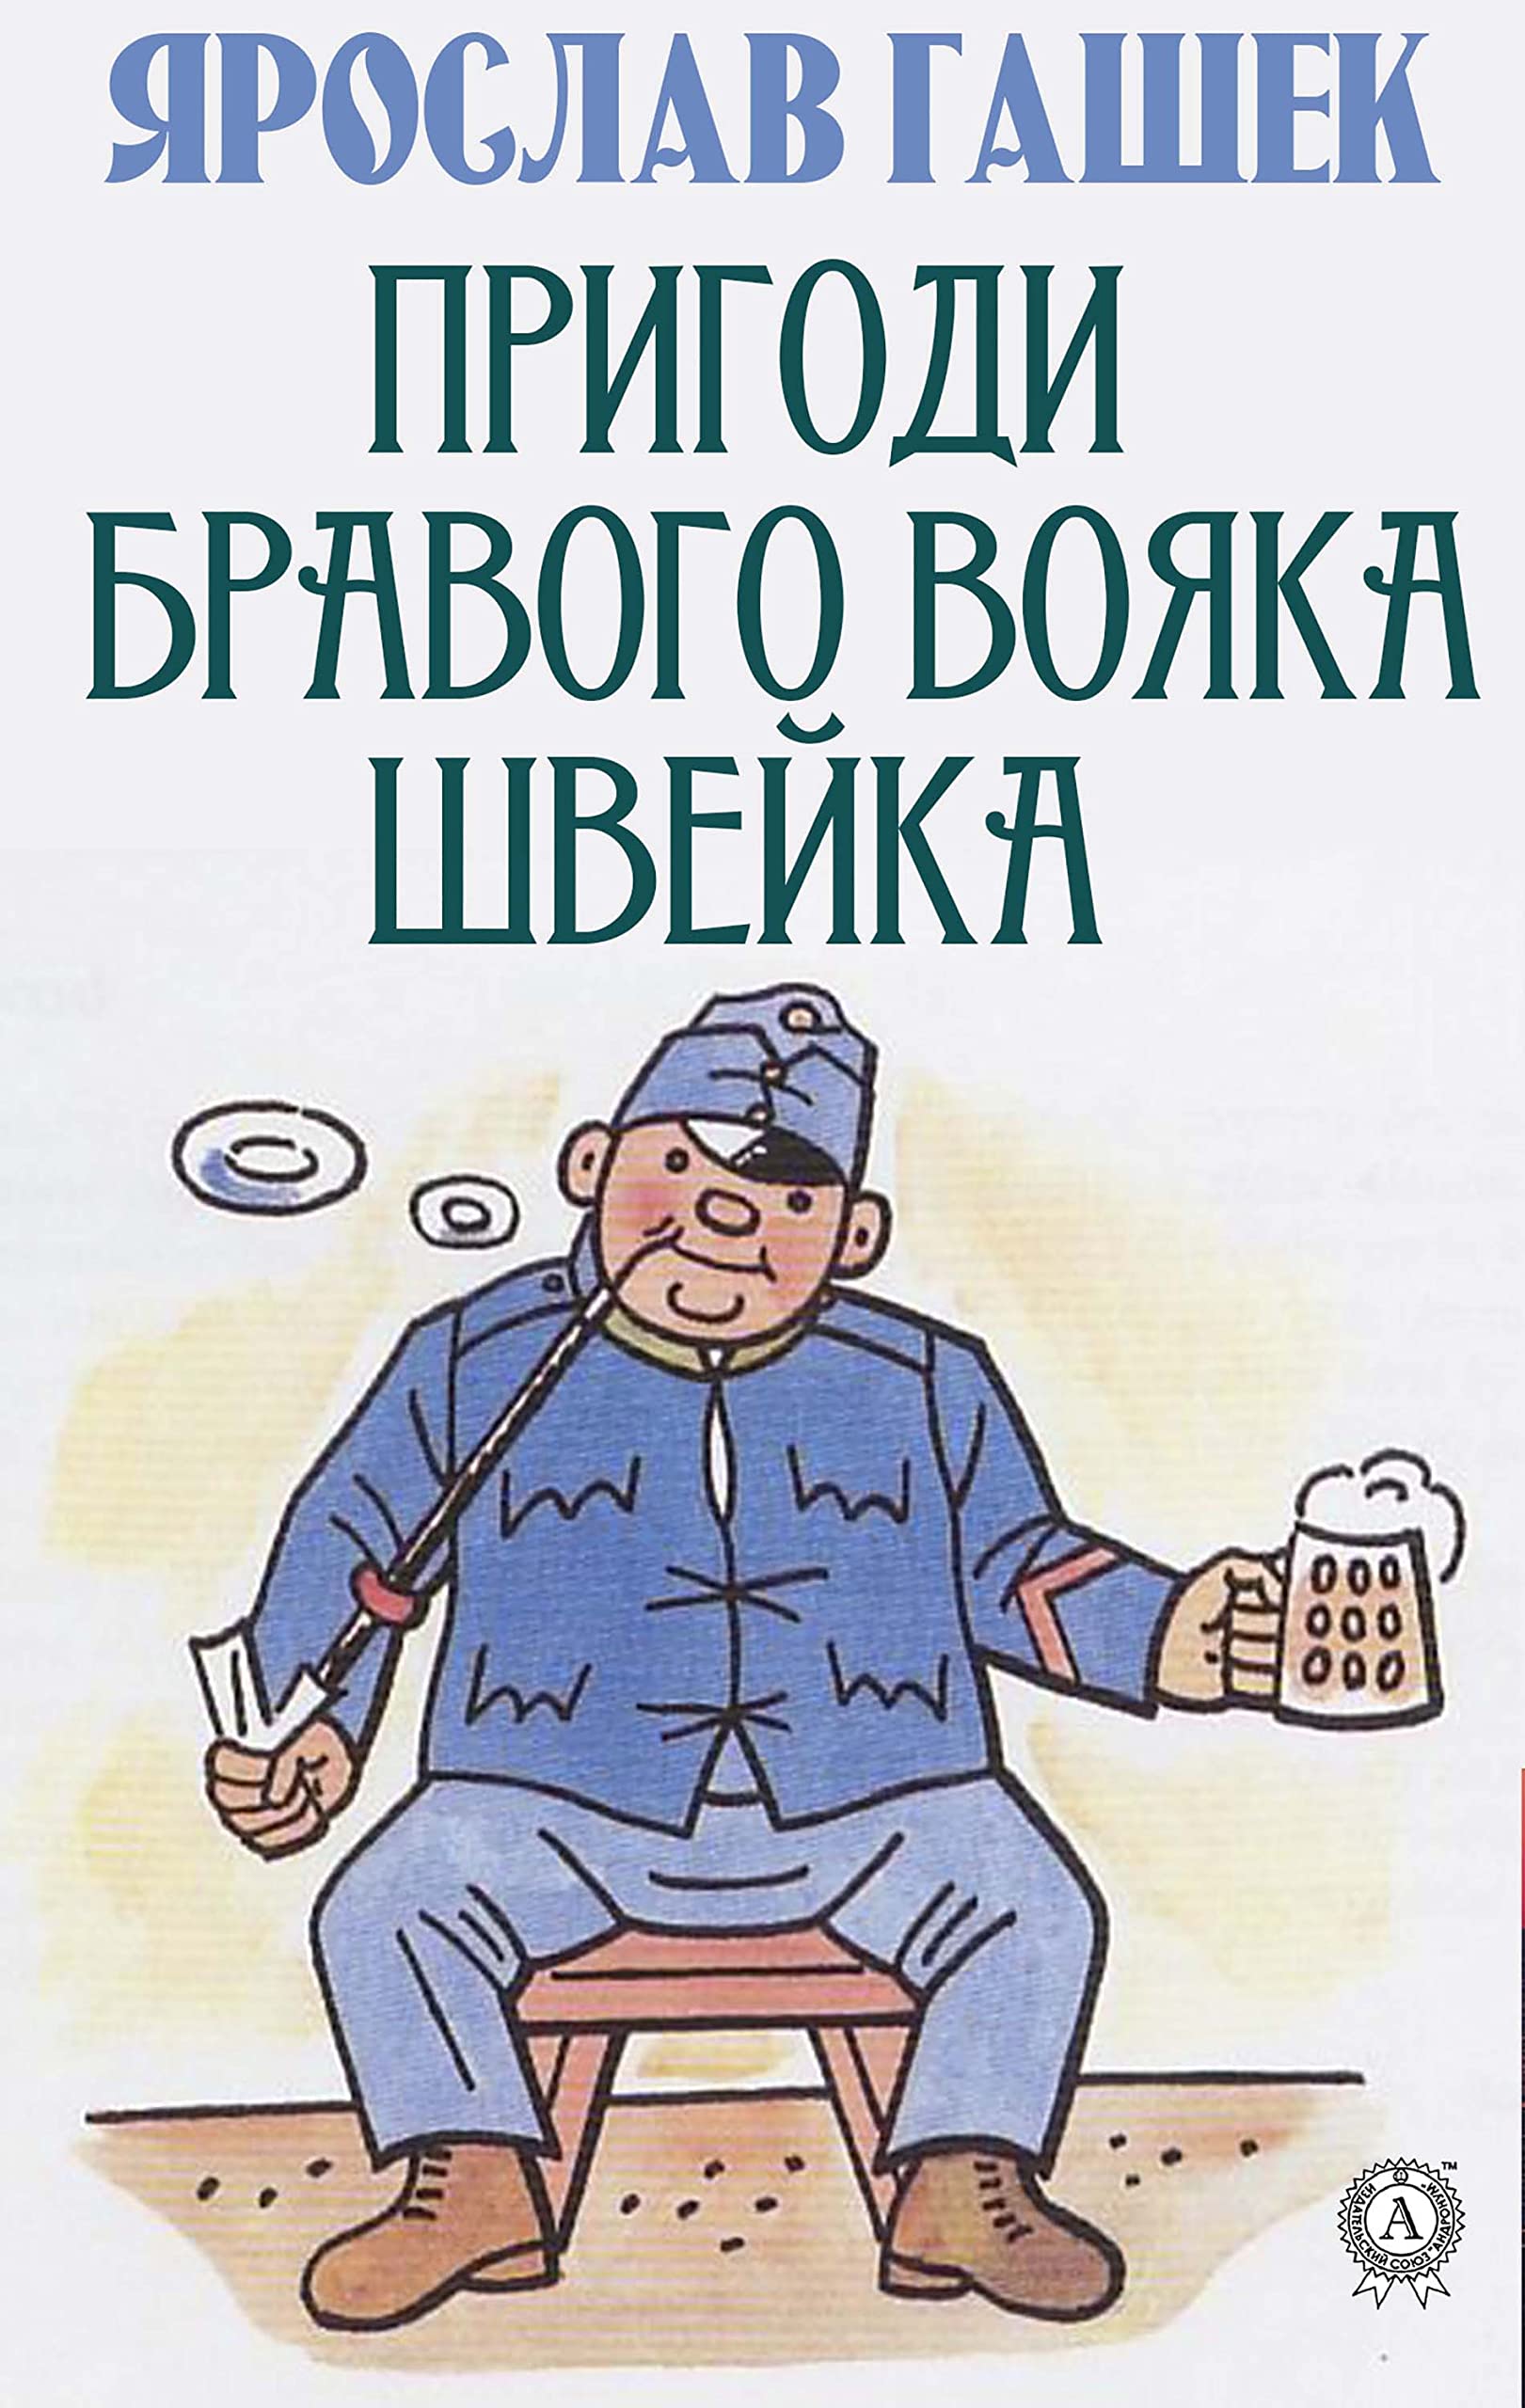 Пригоди бравого вояка Швейка (Ukrainian Edition)